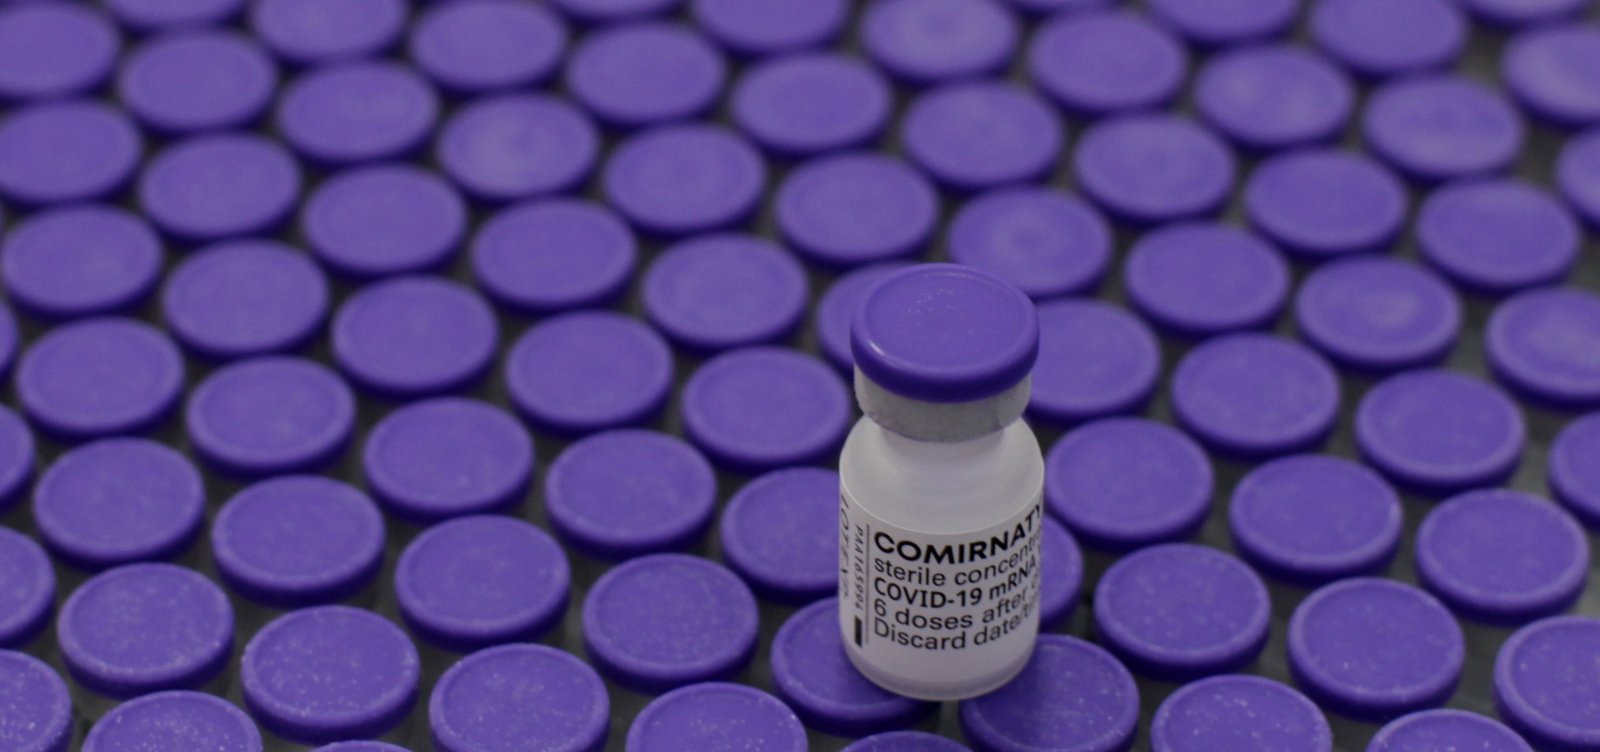 Cidades baianas perdem mais de 1,3 mil doses de vacinas contra Covid-19